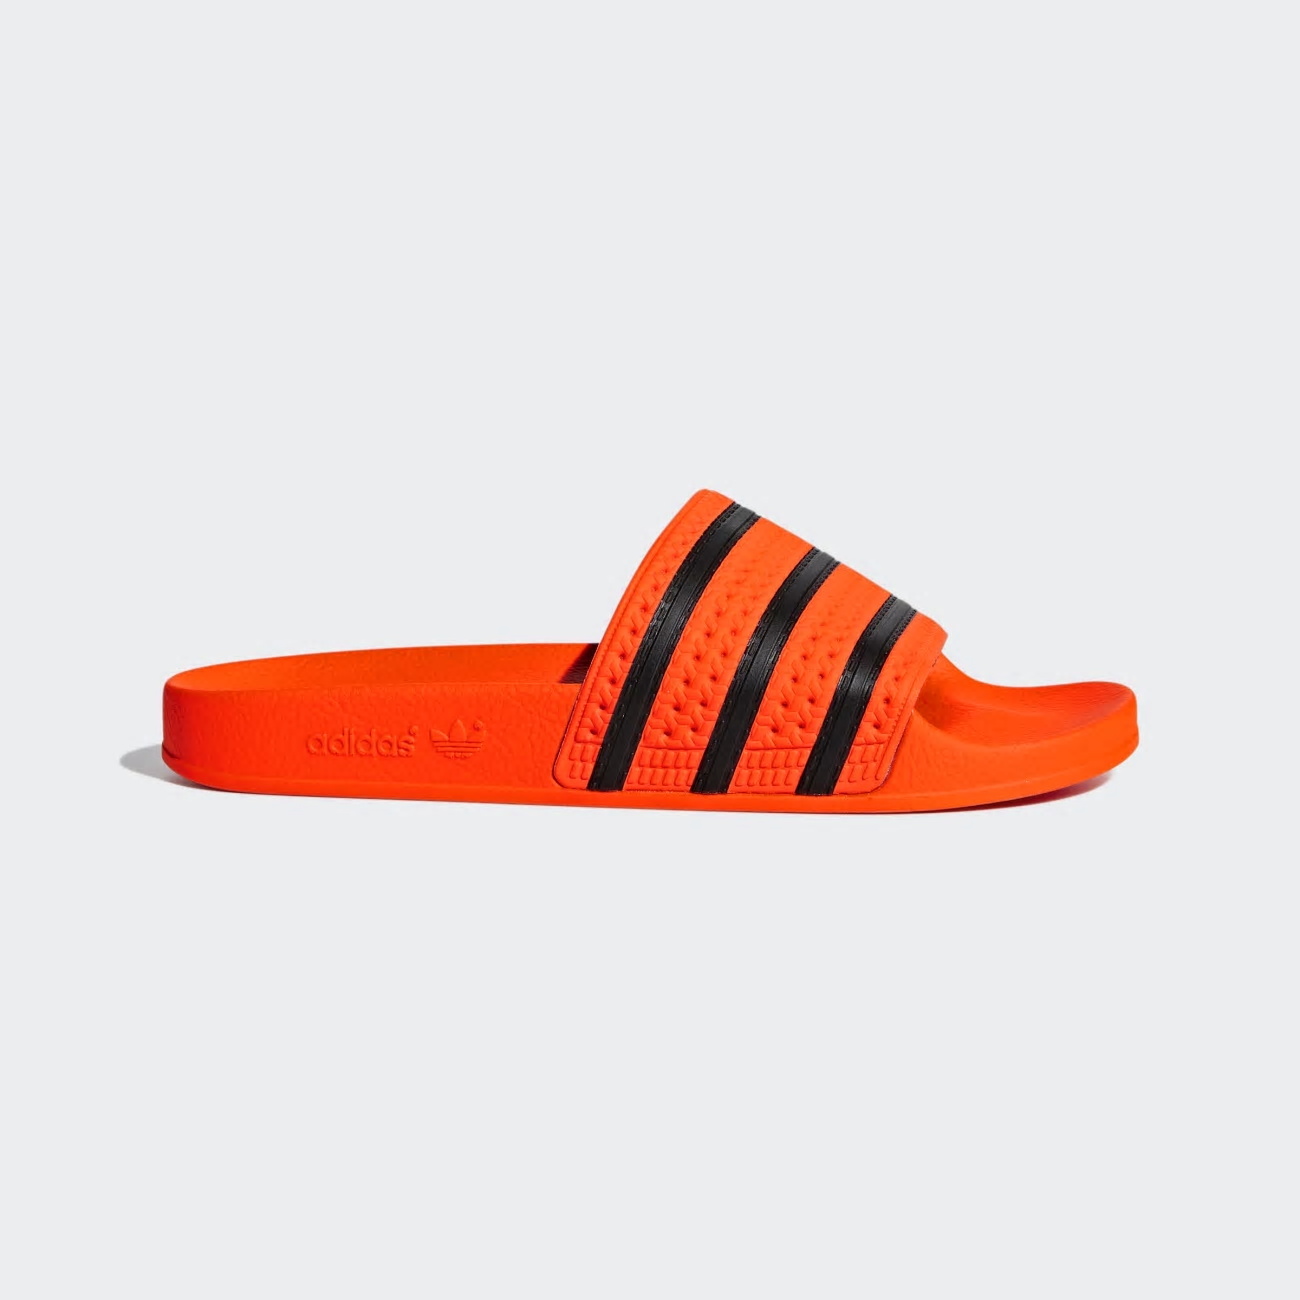 Adidas Adilette Férfi Papucs - Narancssárga [D61430]